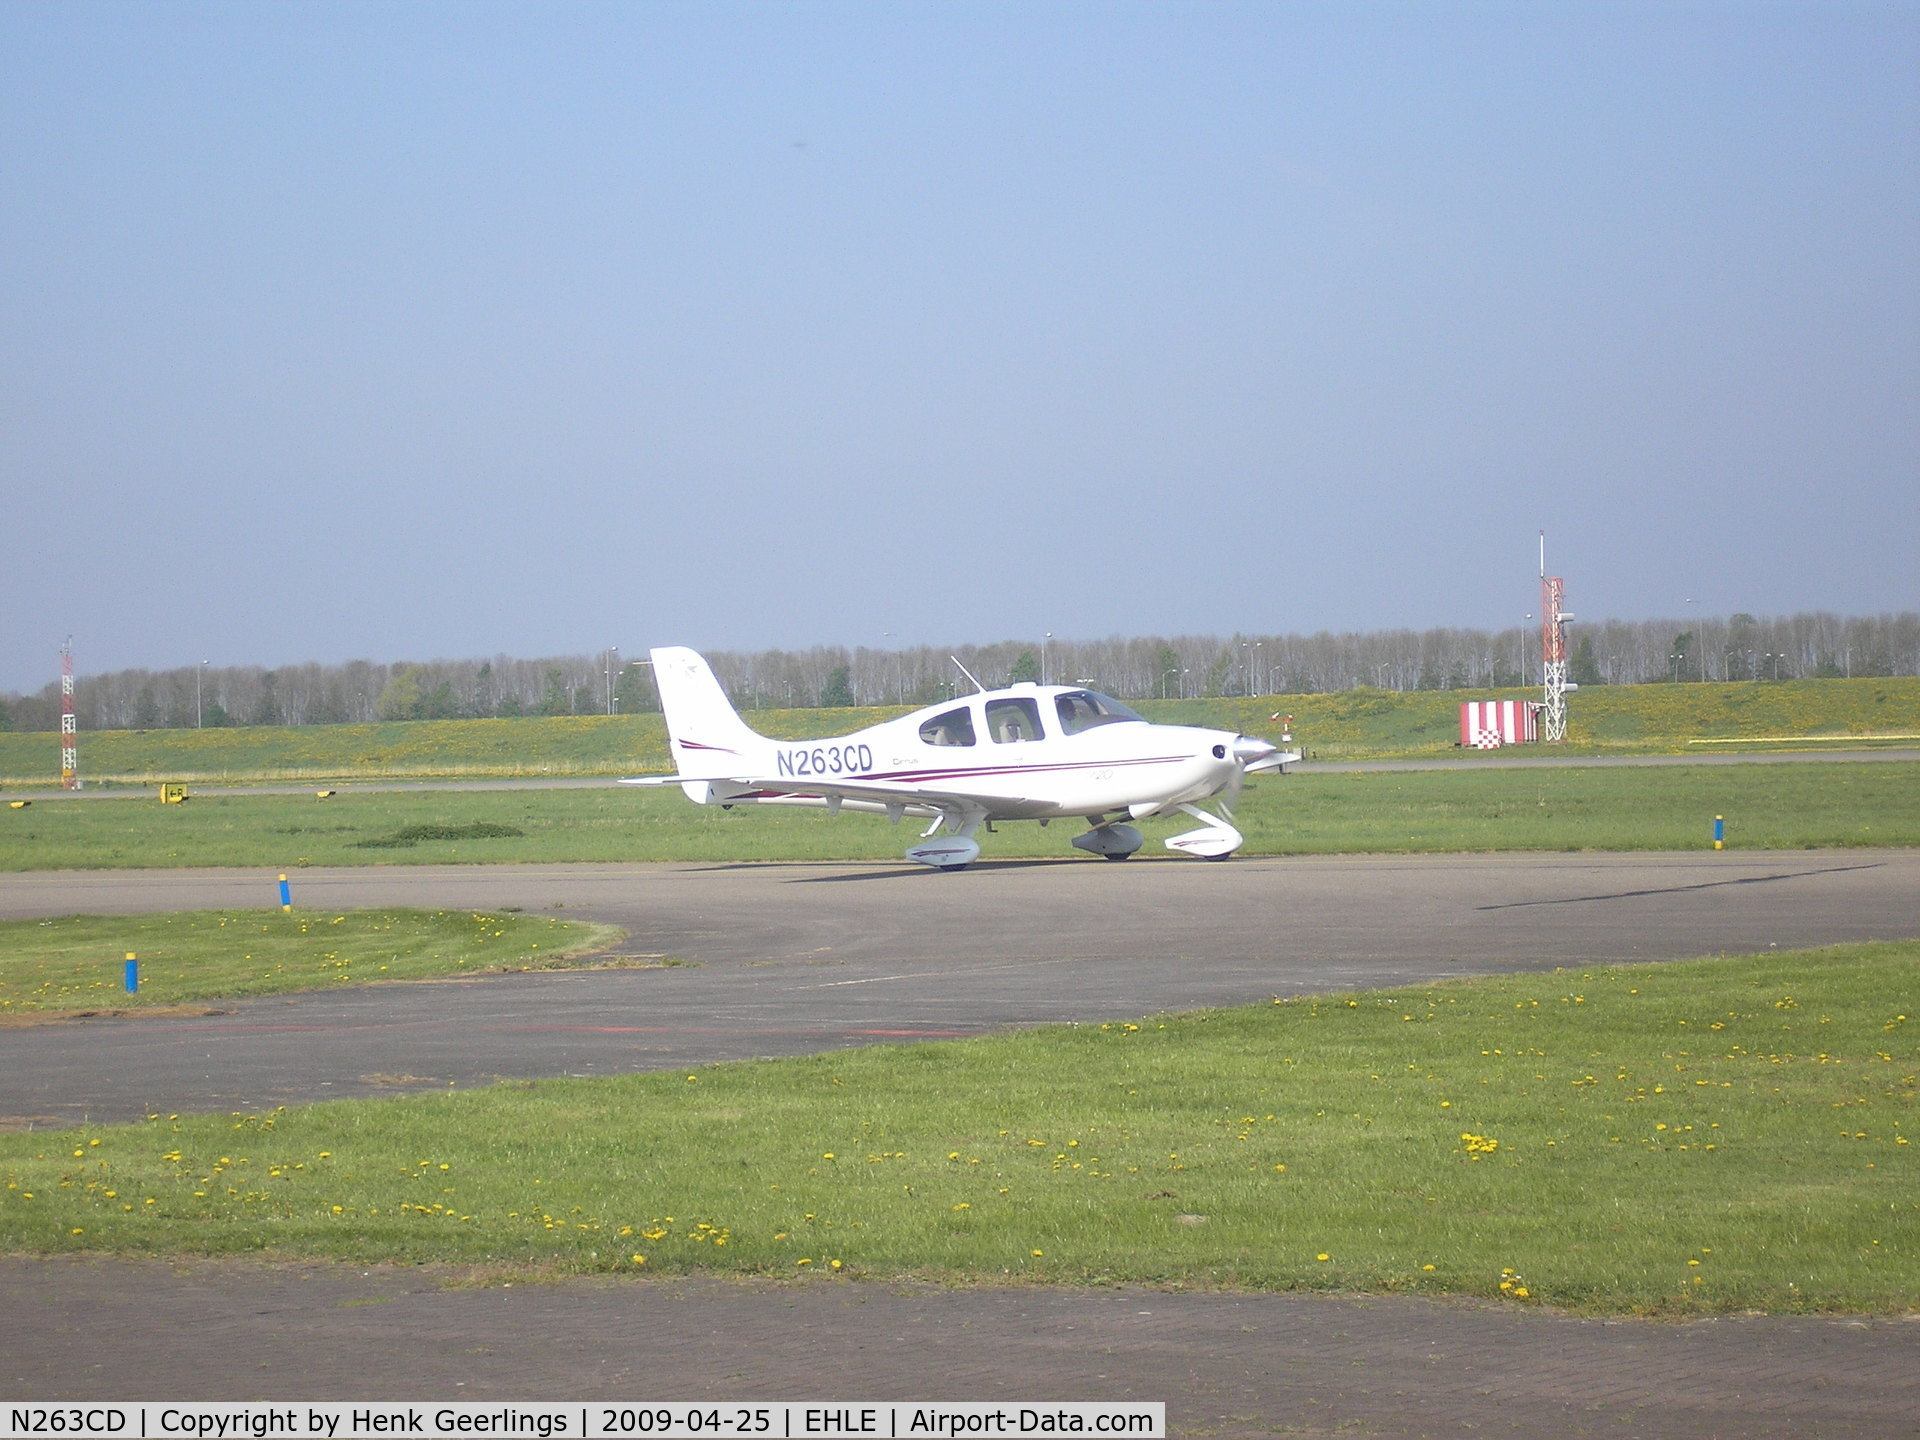 N263CD, 2003 Cirrus SR20 C/N 1308, Lelystad Airport